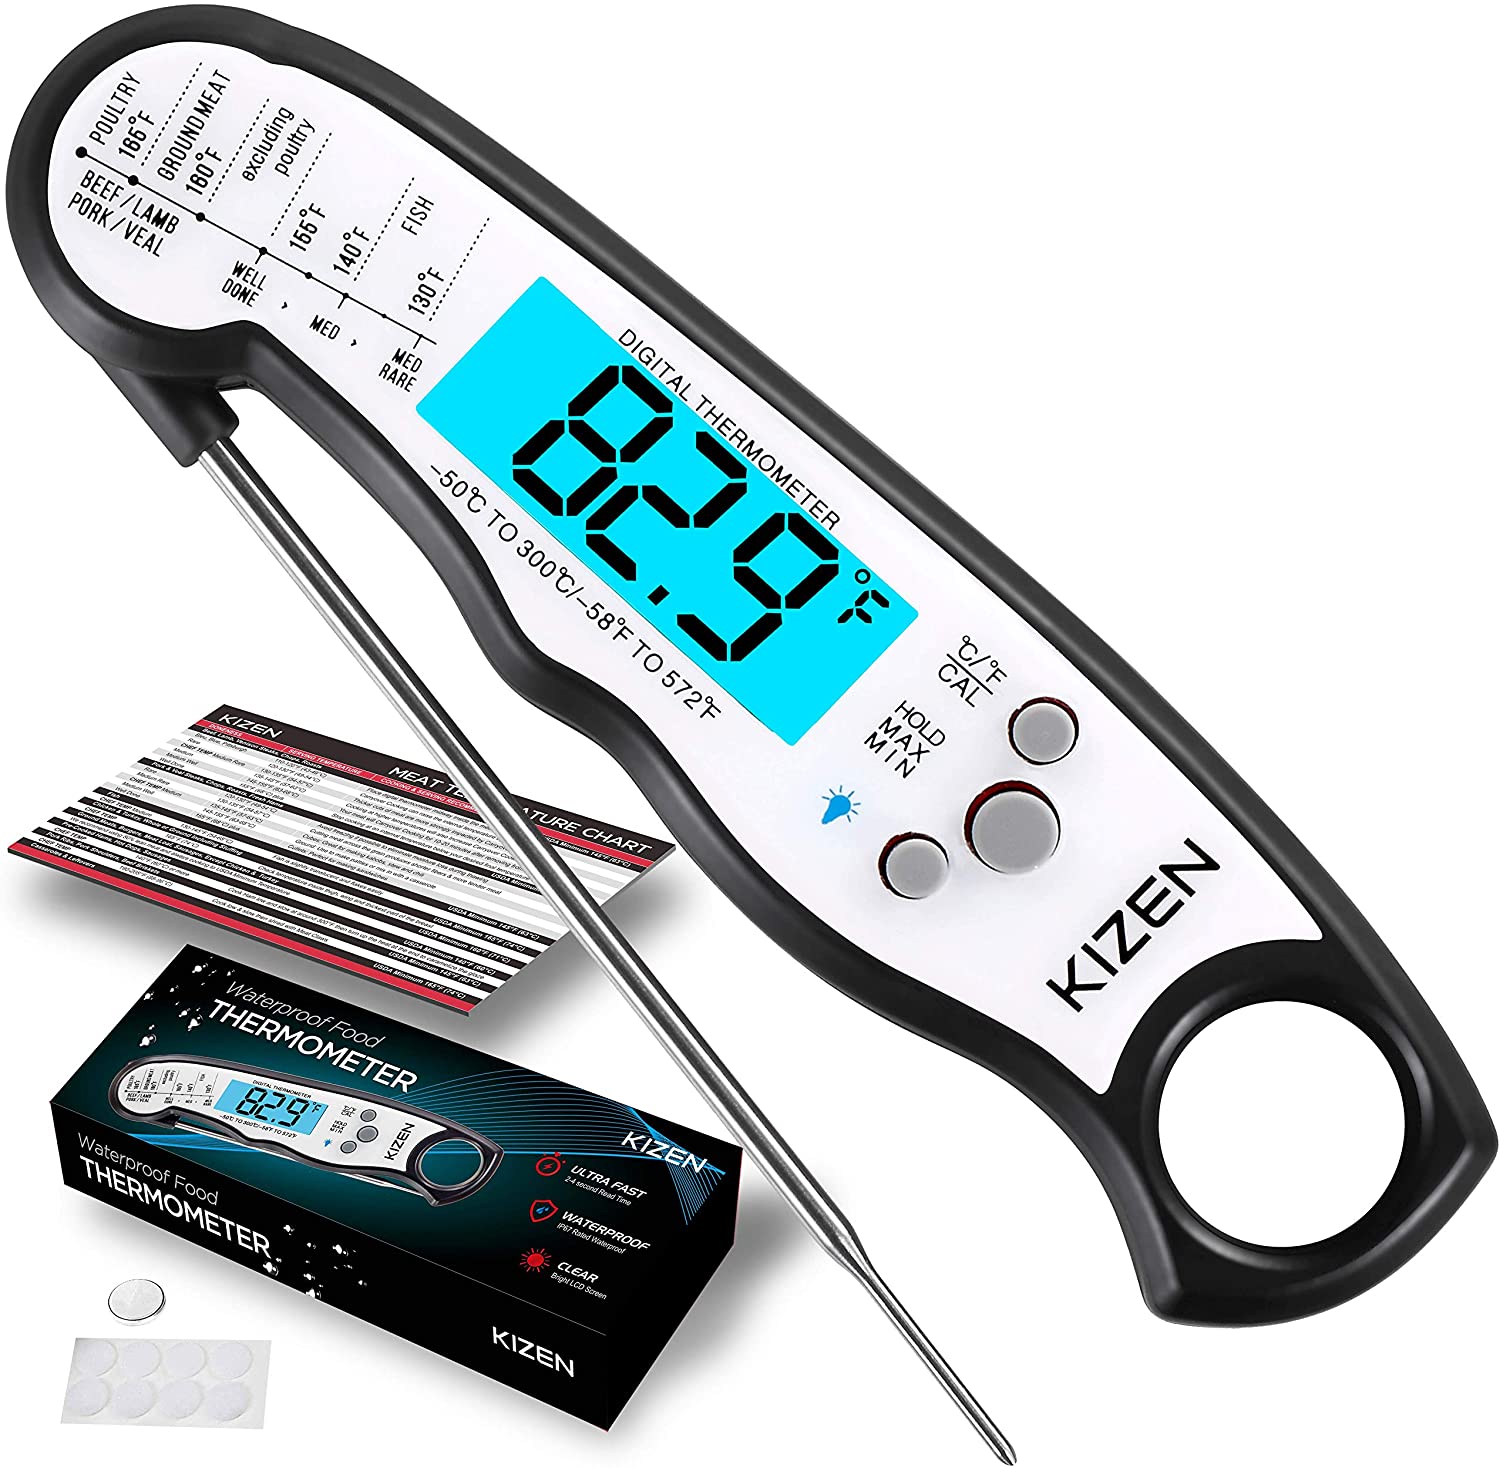 https://www.dontwasteyourmoney.com/wp-content/uploads/2020/11/kizen-instant-read-digital-meat-thermometer-jet-black-digital-meat-thermometer.jpg